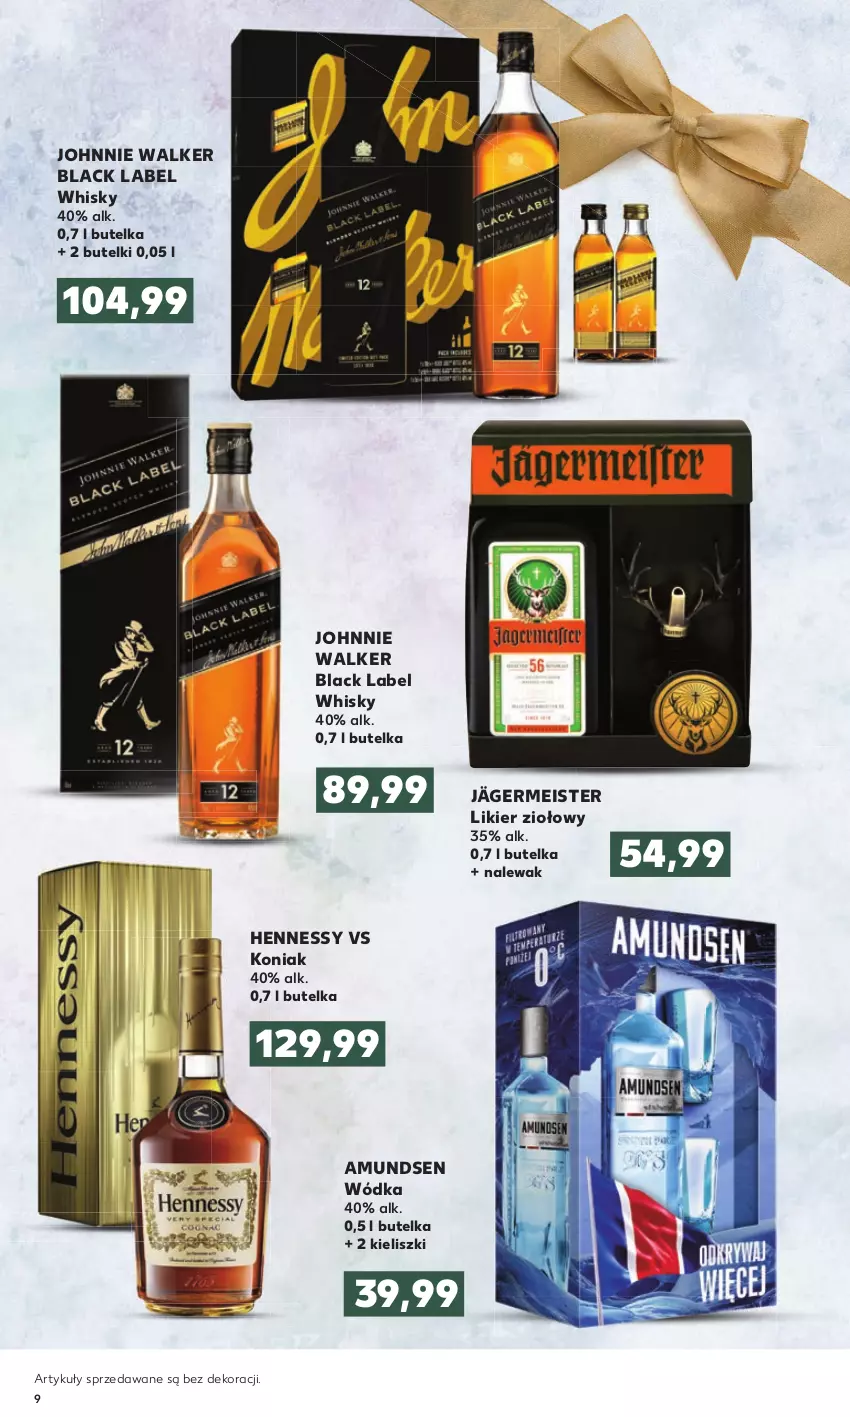 Gazetka promocyjna Kaufland - Oferta specjalna - ważna 10.11 do 24.11.2021 - strona 9 - produkty: Amundsen, Johnnie Walker, Lack, Likier, Whisky, Wódka